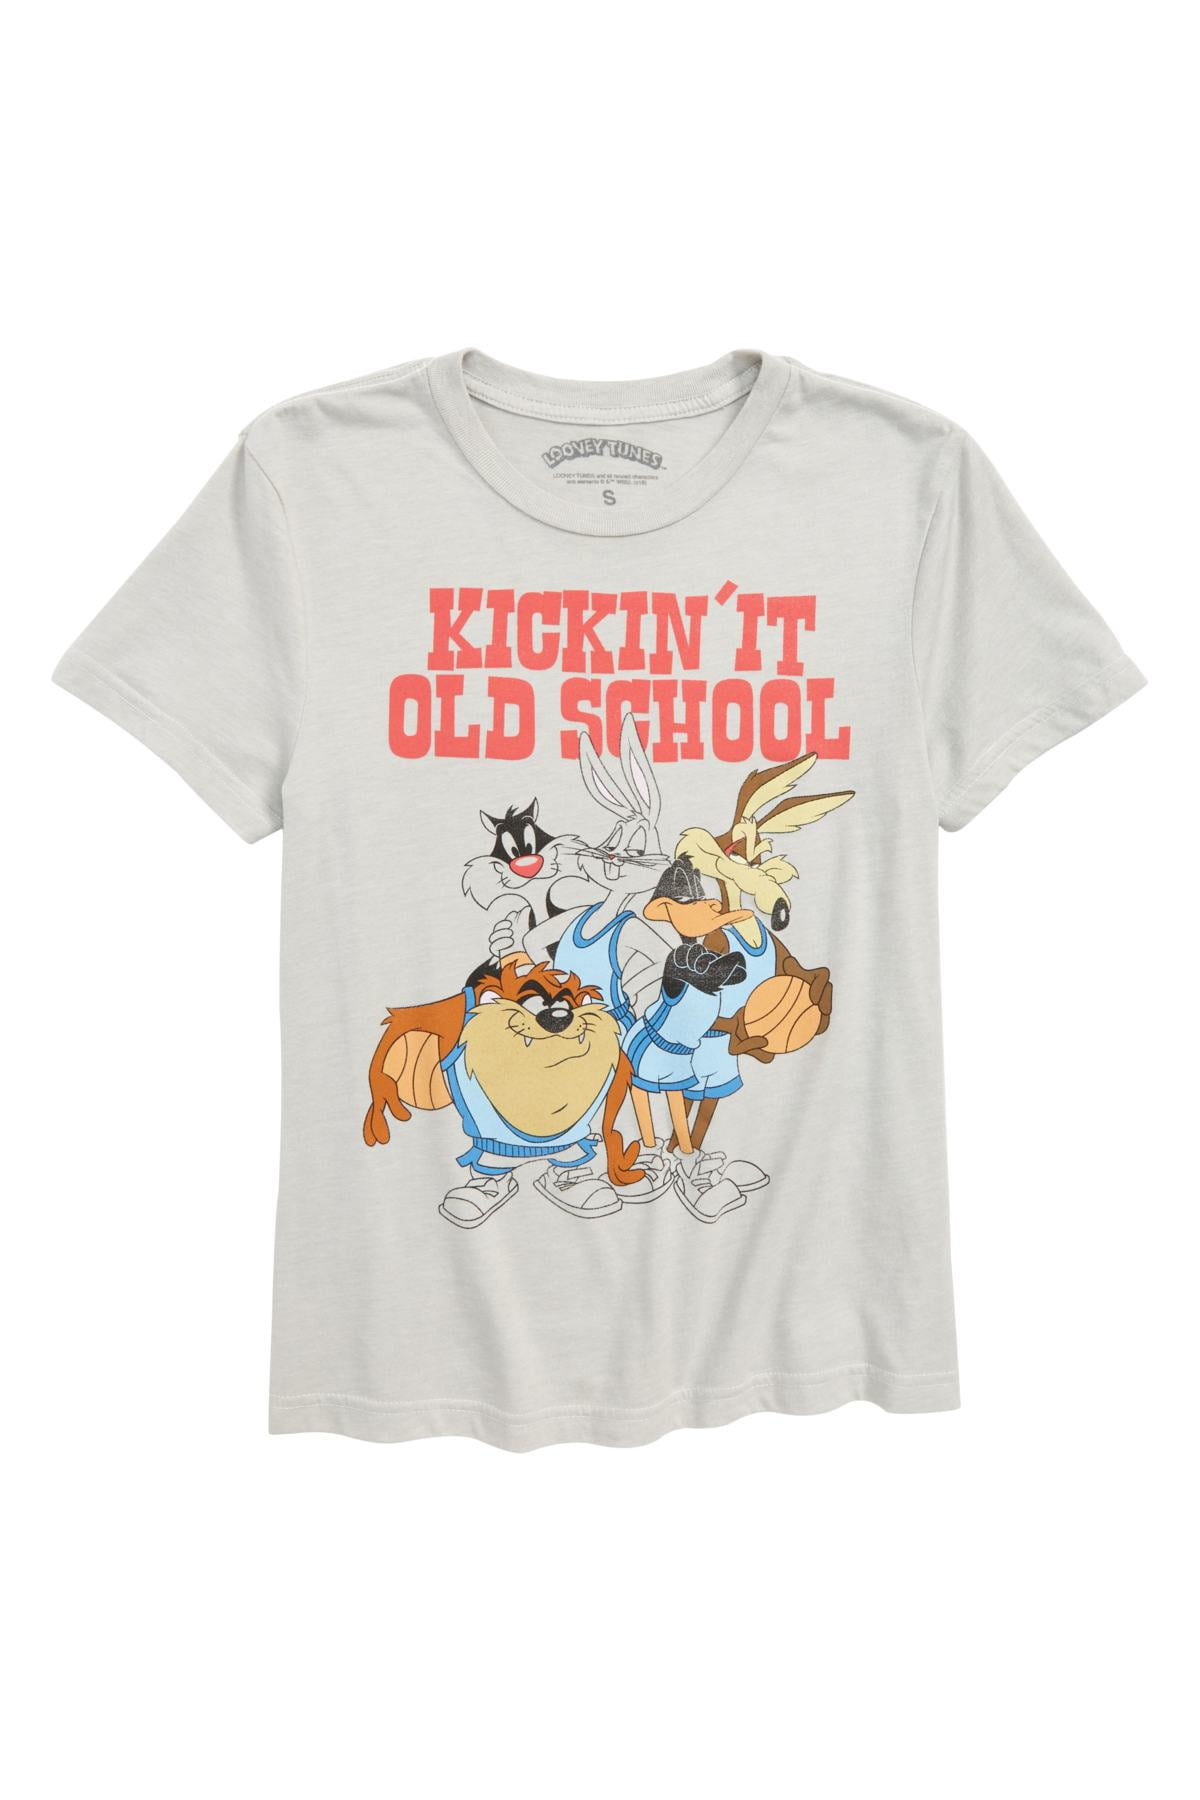 Boys Large Kickin It Old School T Shirt L